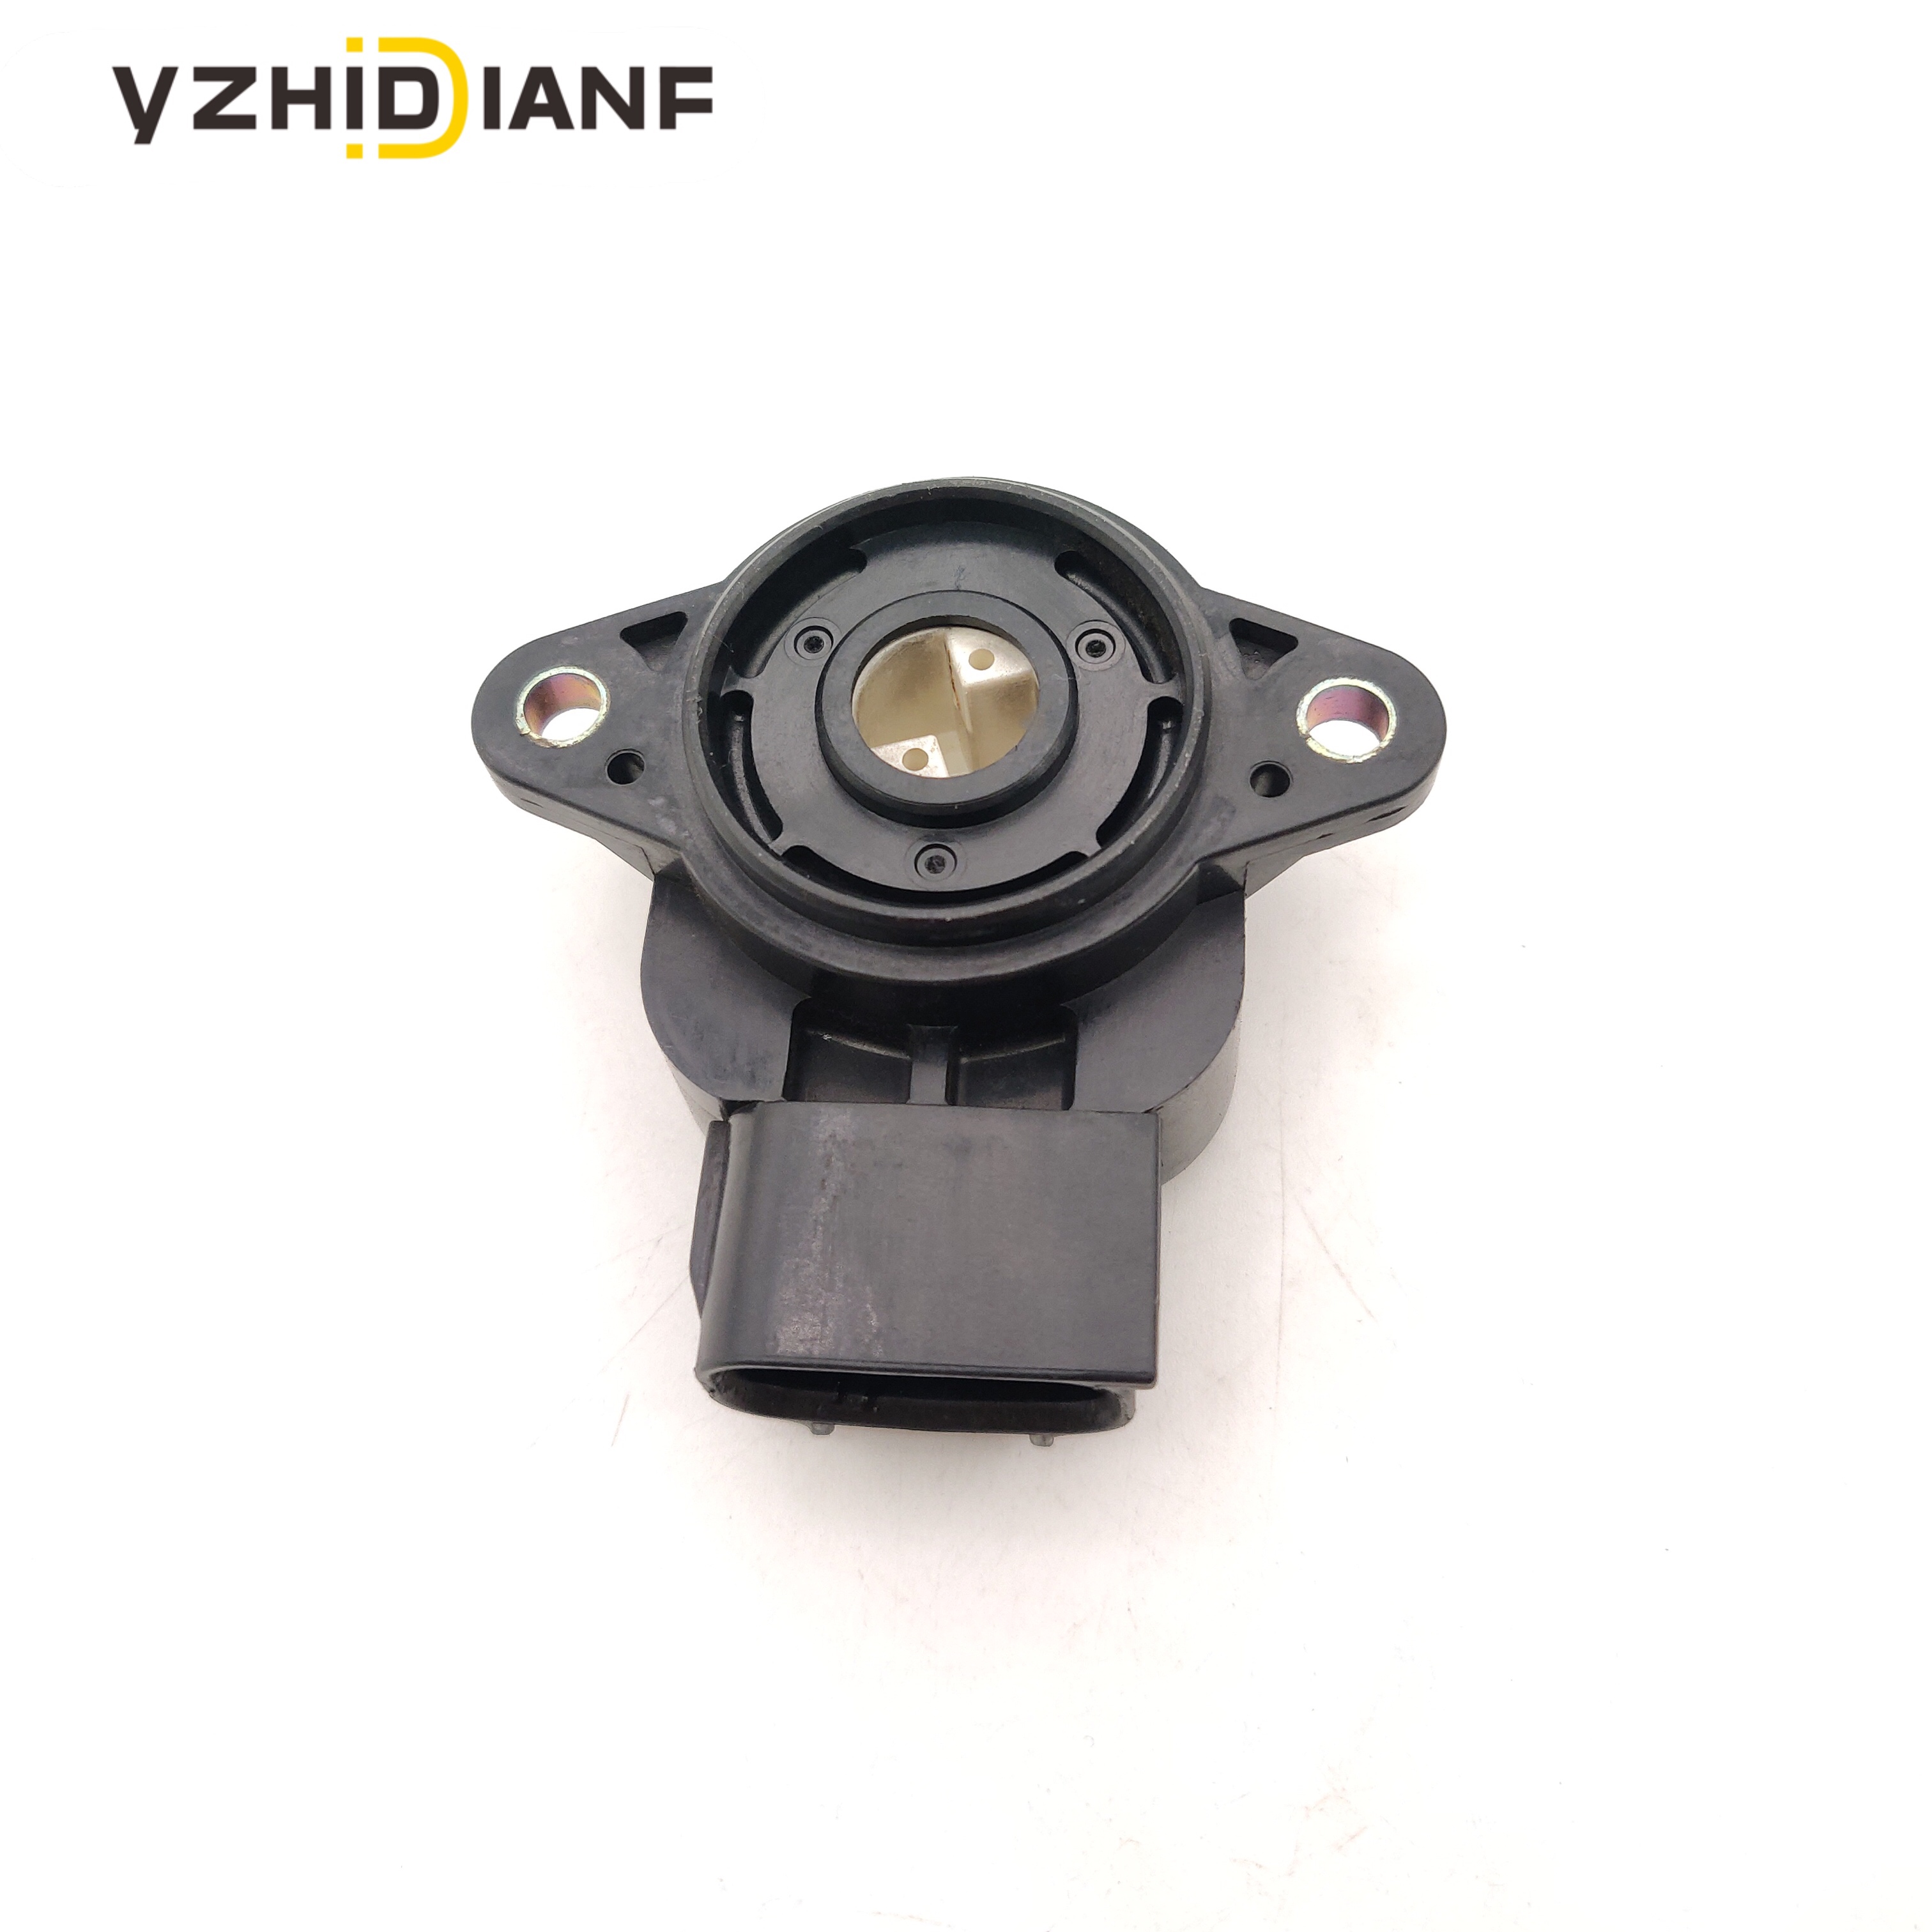 23731-EA20A Crankshaft Position Sensor With Connector Fits:Nissan Suzuki V8 4.0L 